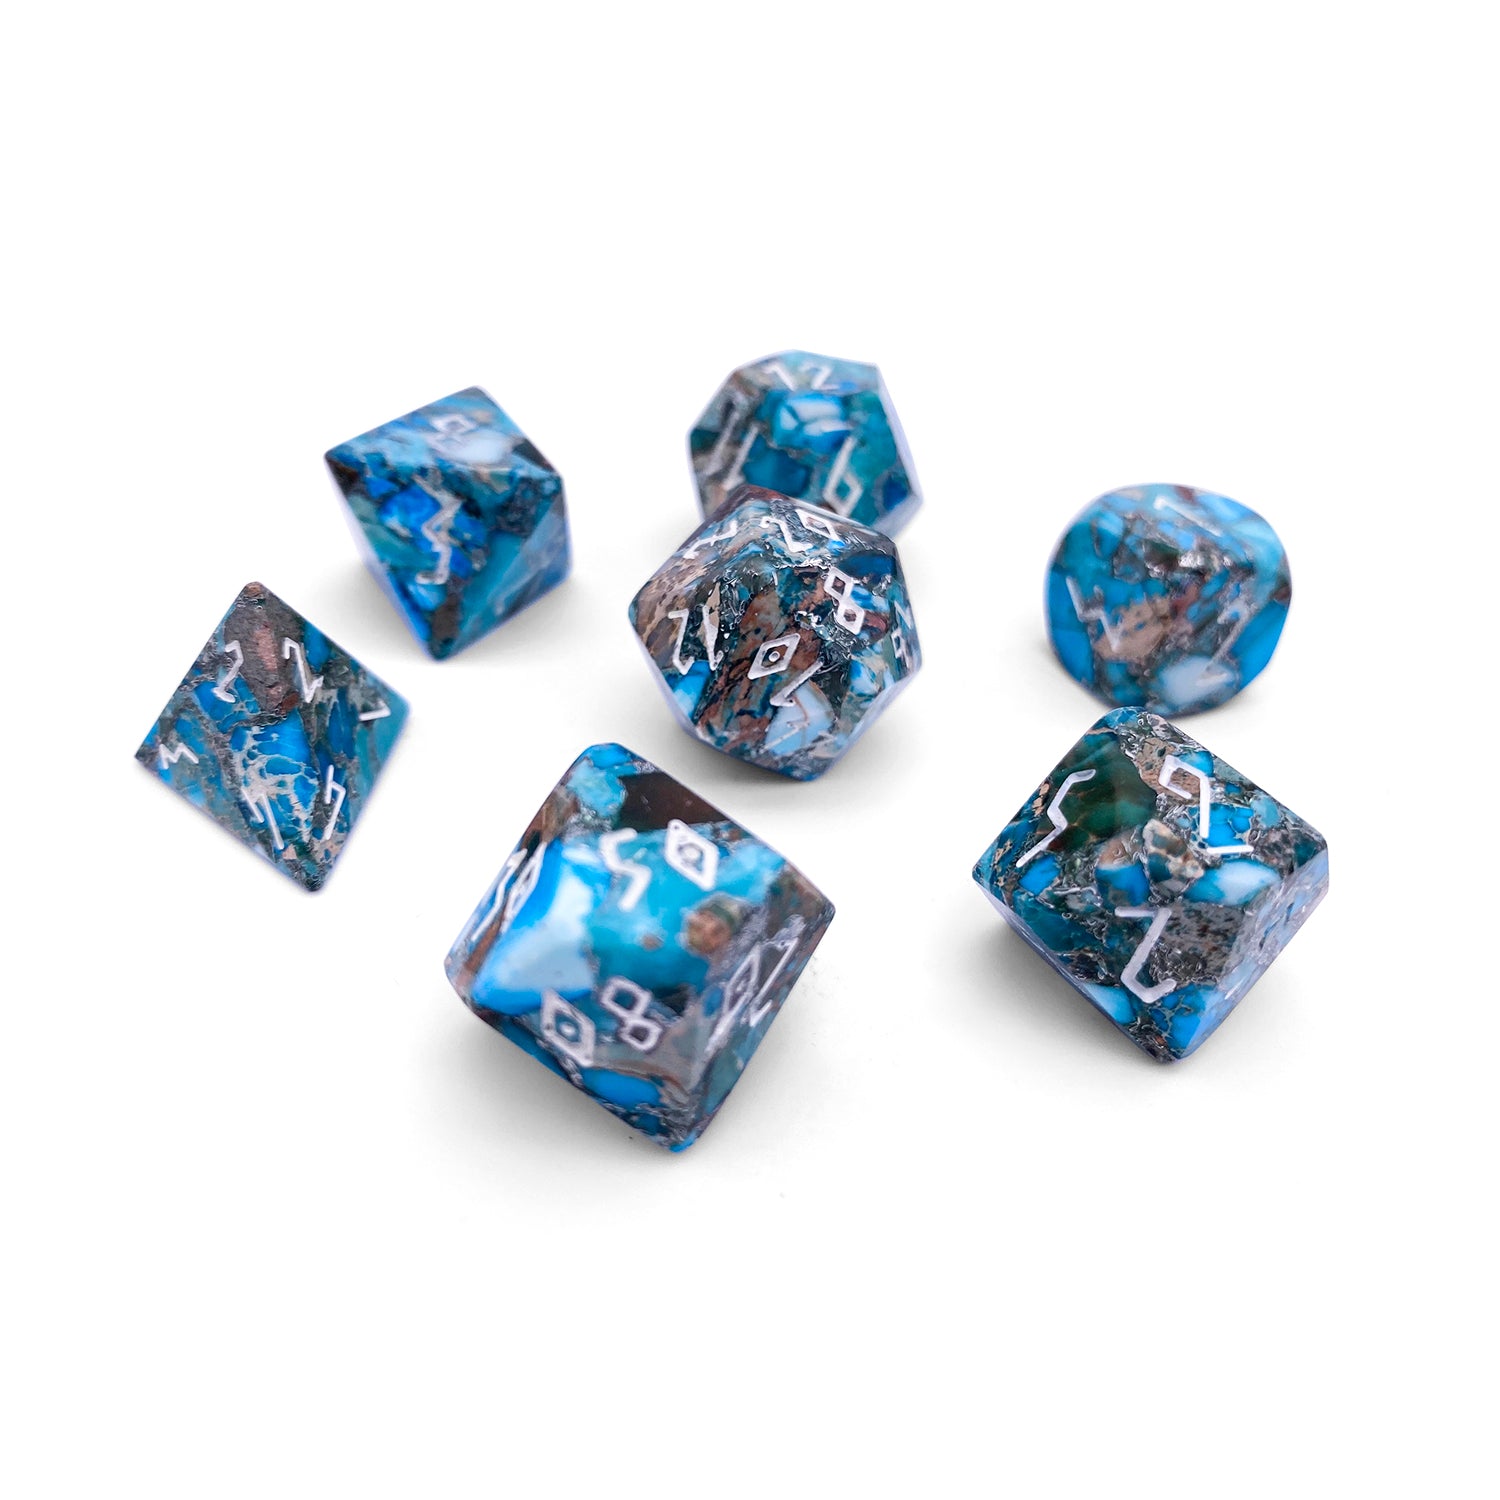 Copper Blue Imperial Jasper - 7 Piece RPG Set TruStone Dice